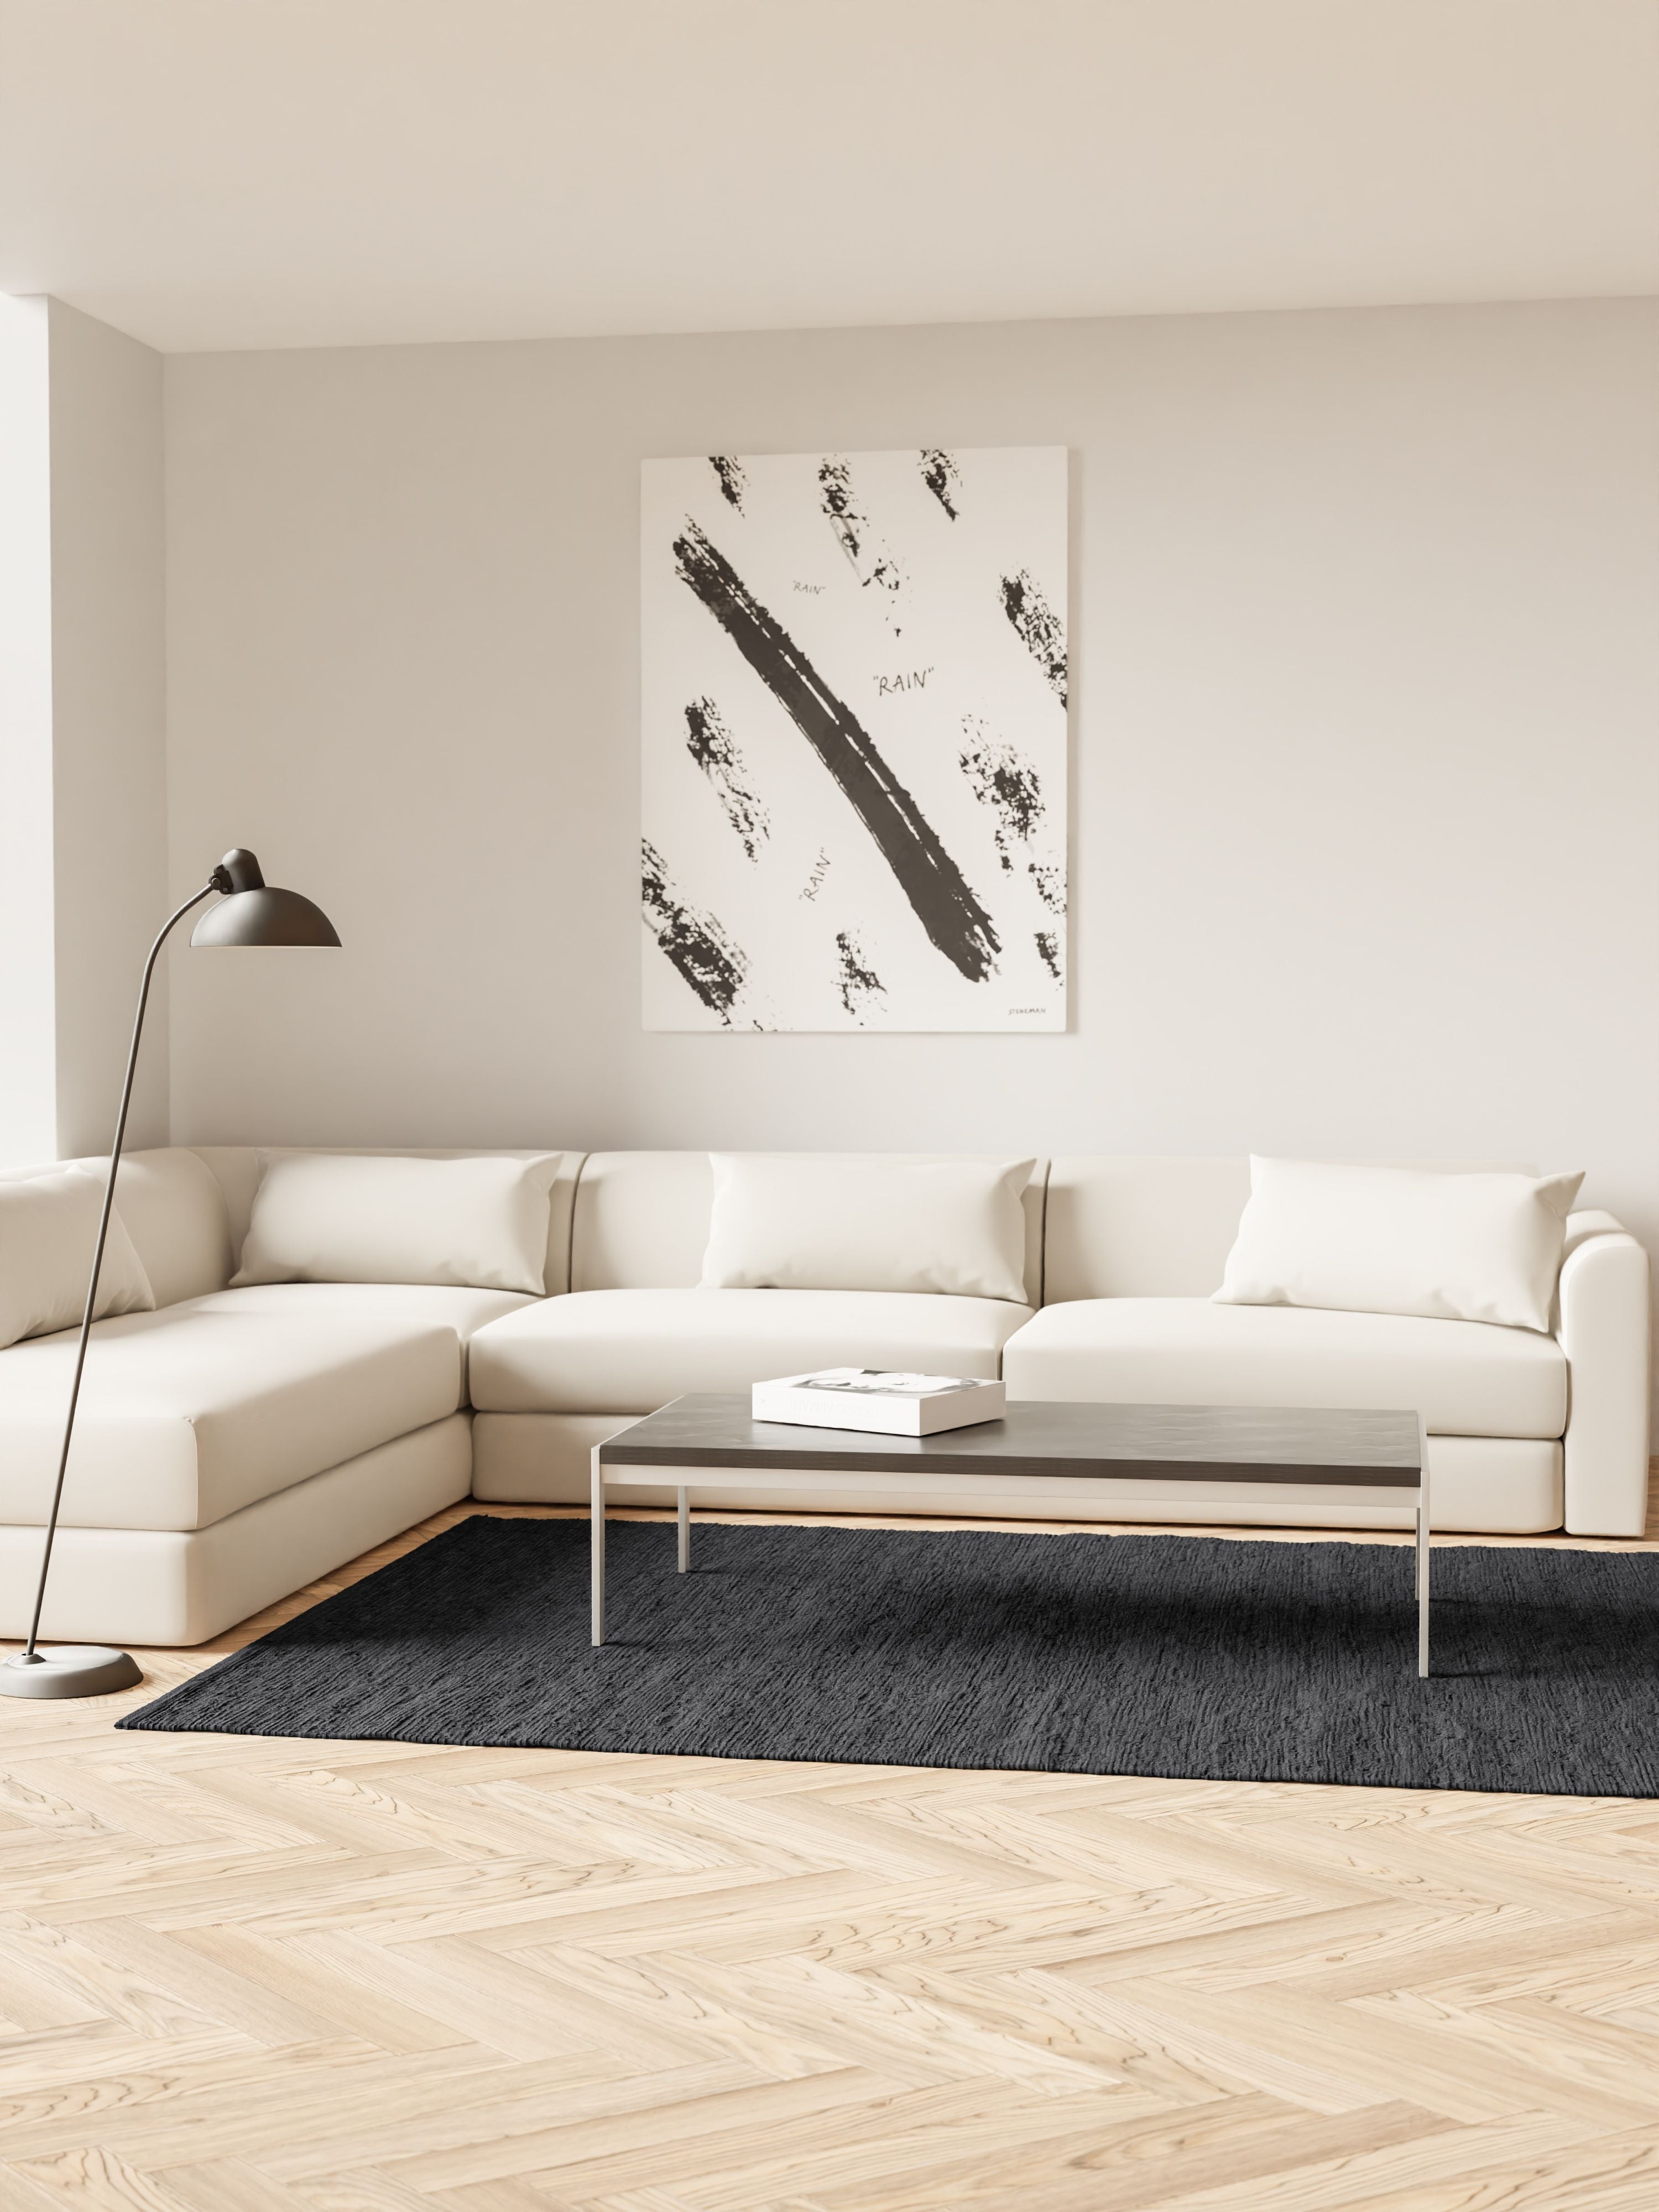 Koberec pevný bavlněný koberec 170 x 240 cm, uhlí